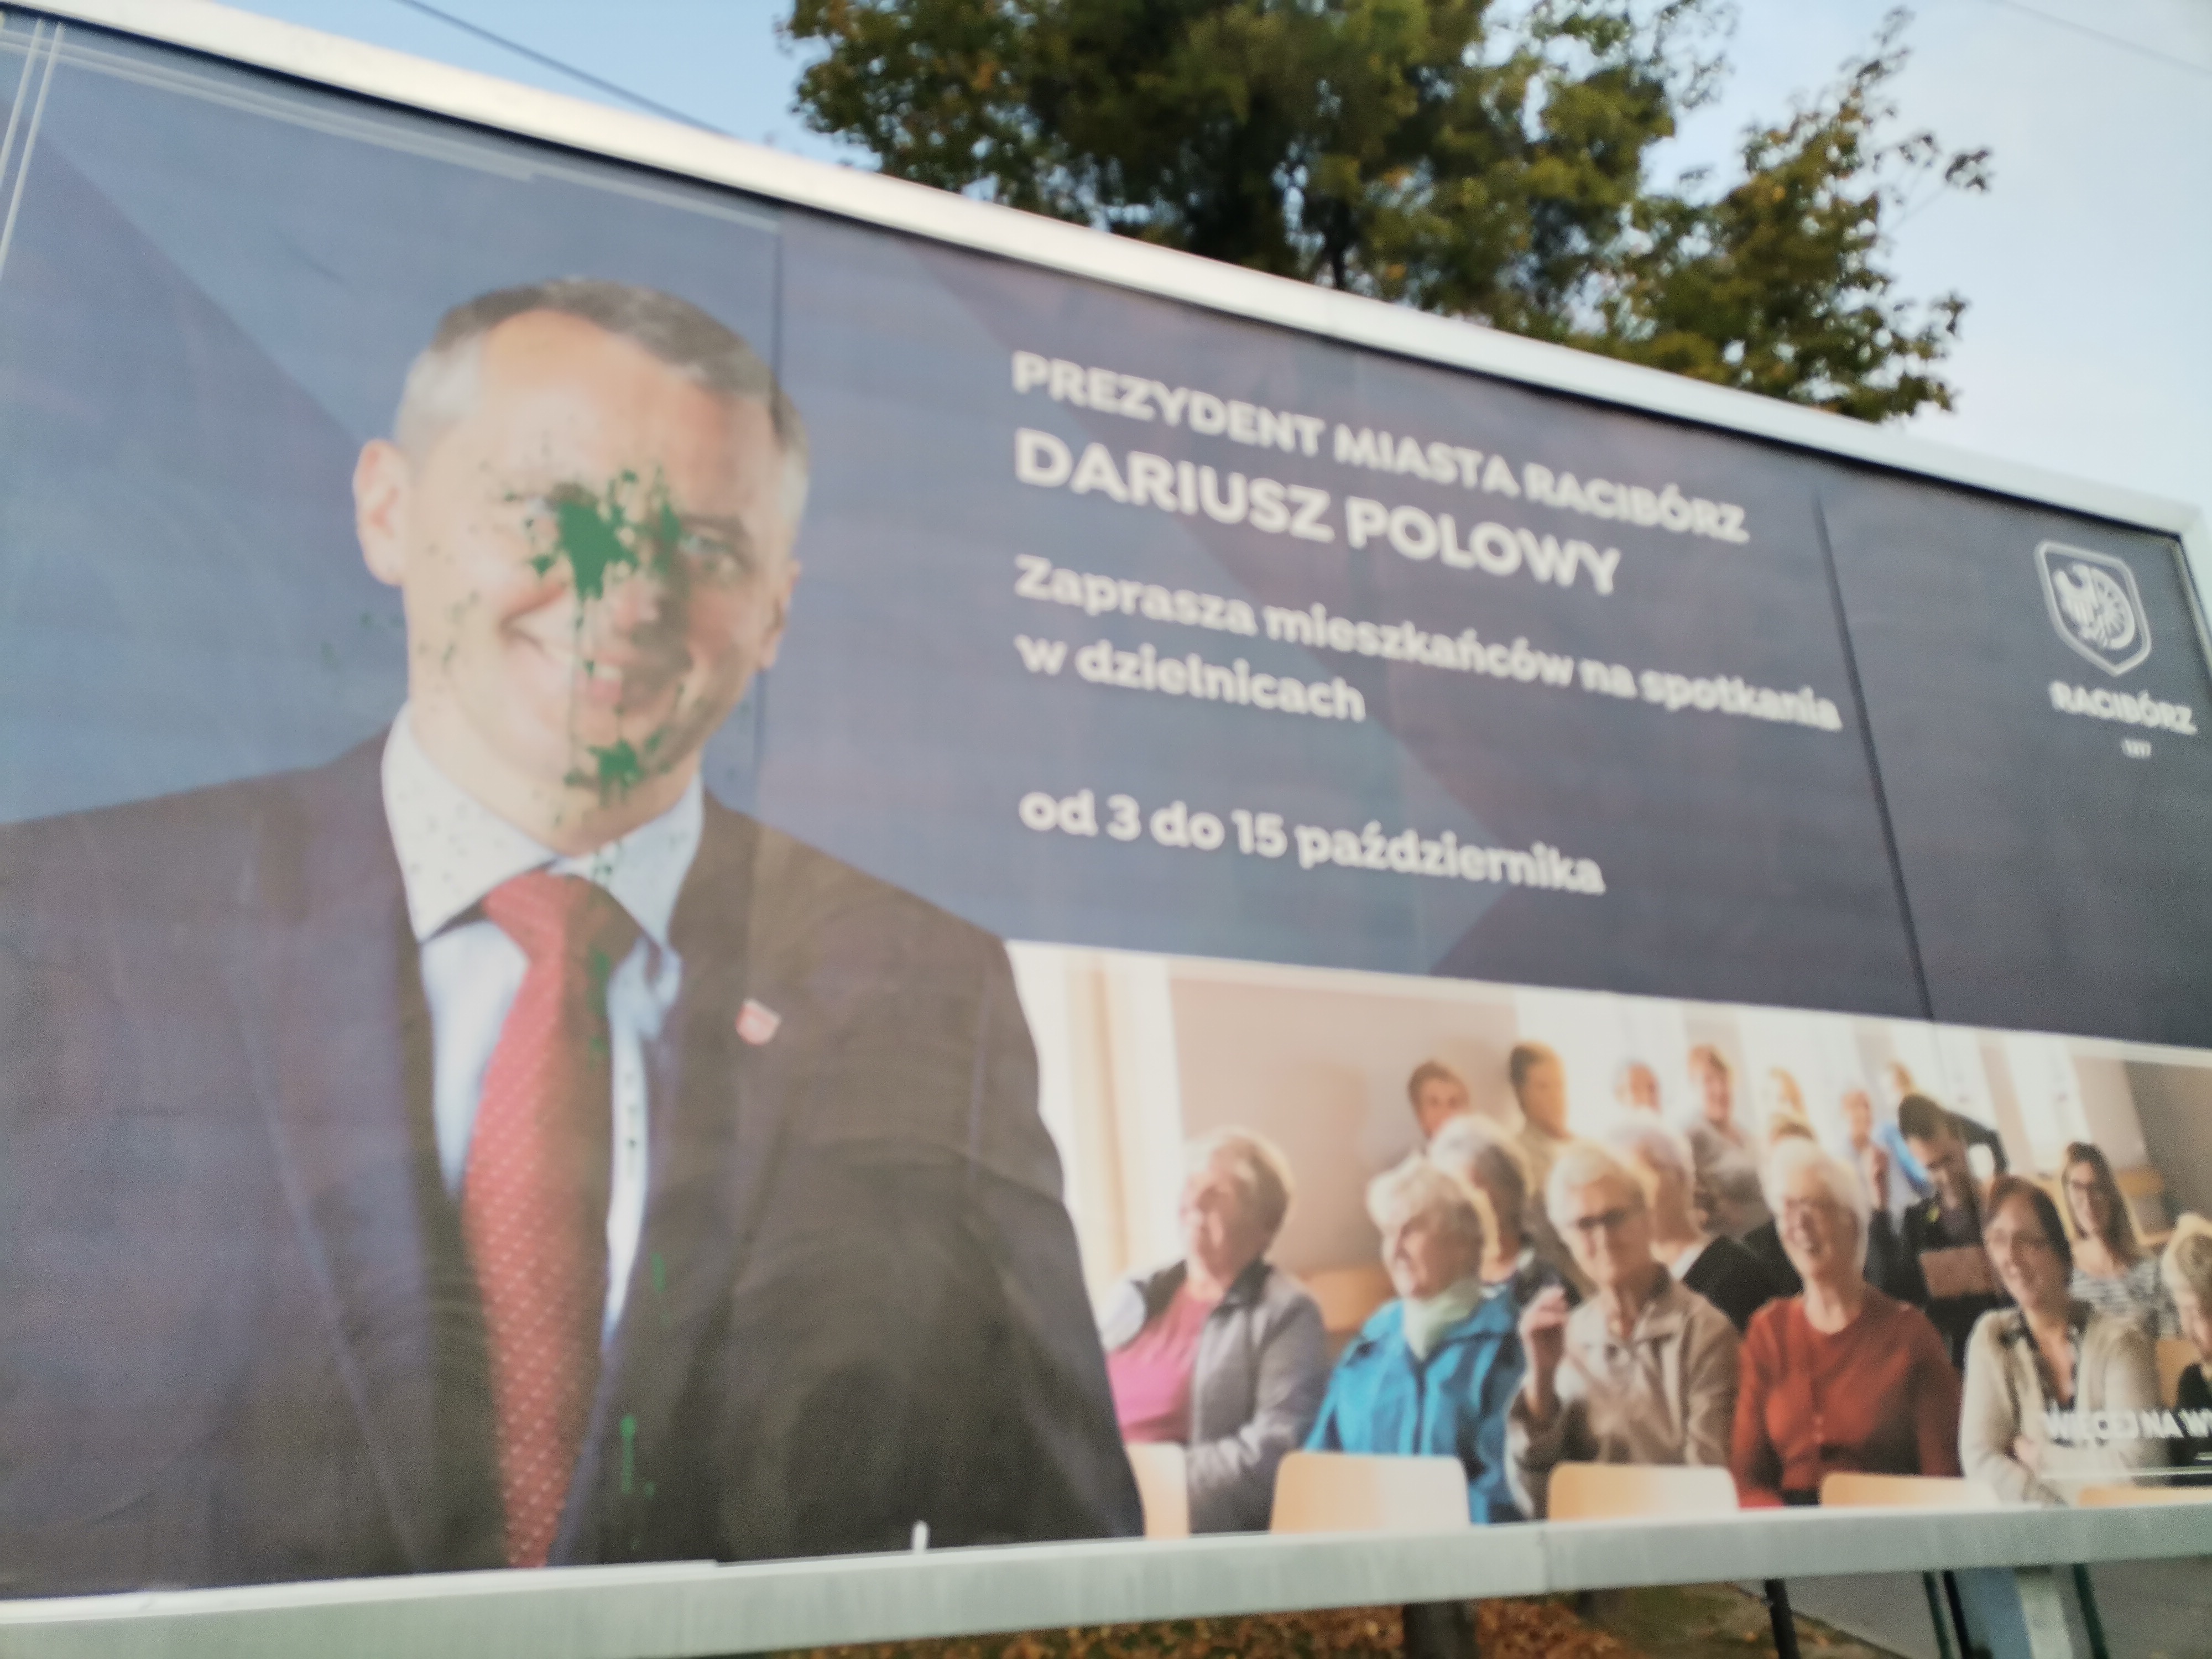 W Oborze na bilbordzie promującym spotkania z prezydentem wylano farbę na zdjęciu Dariusza Polowego